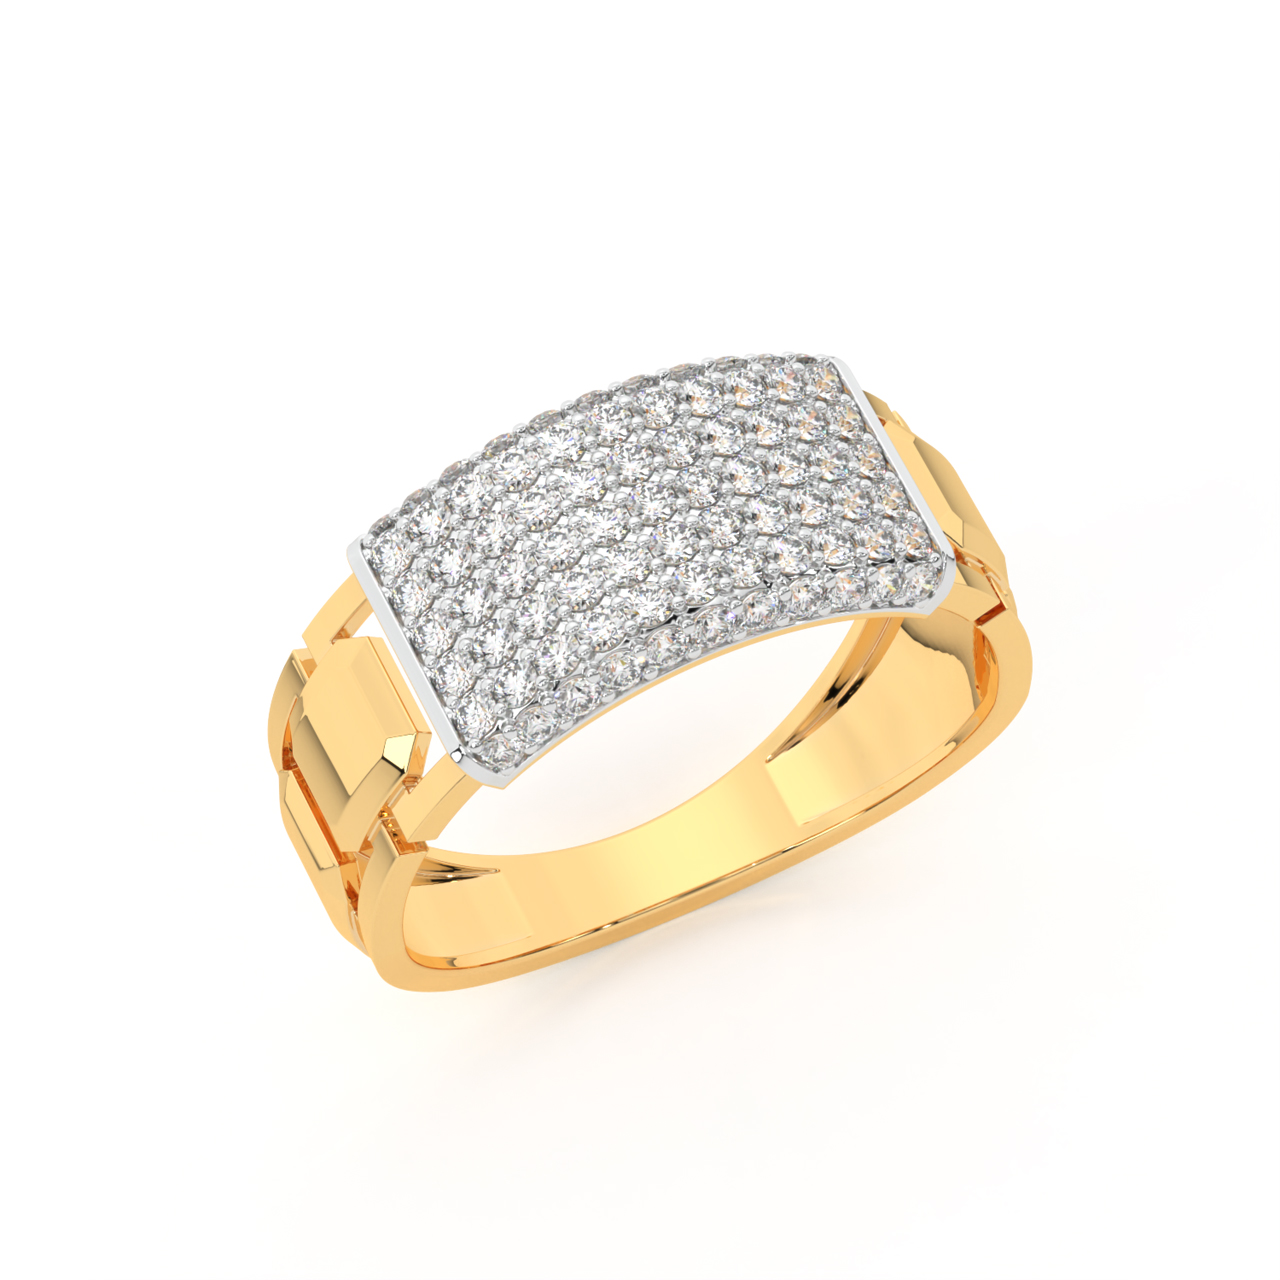 Buy Eclectic Diamond Ring For Men Online | ORRA